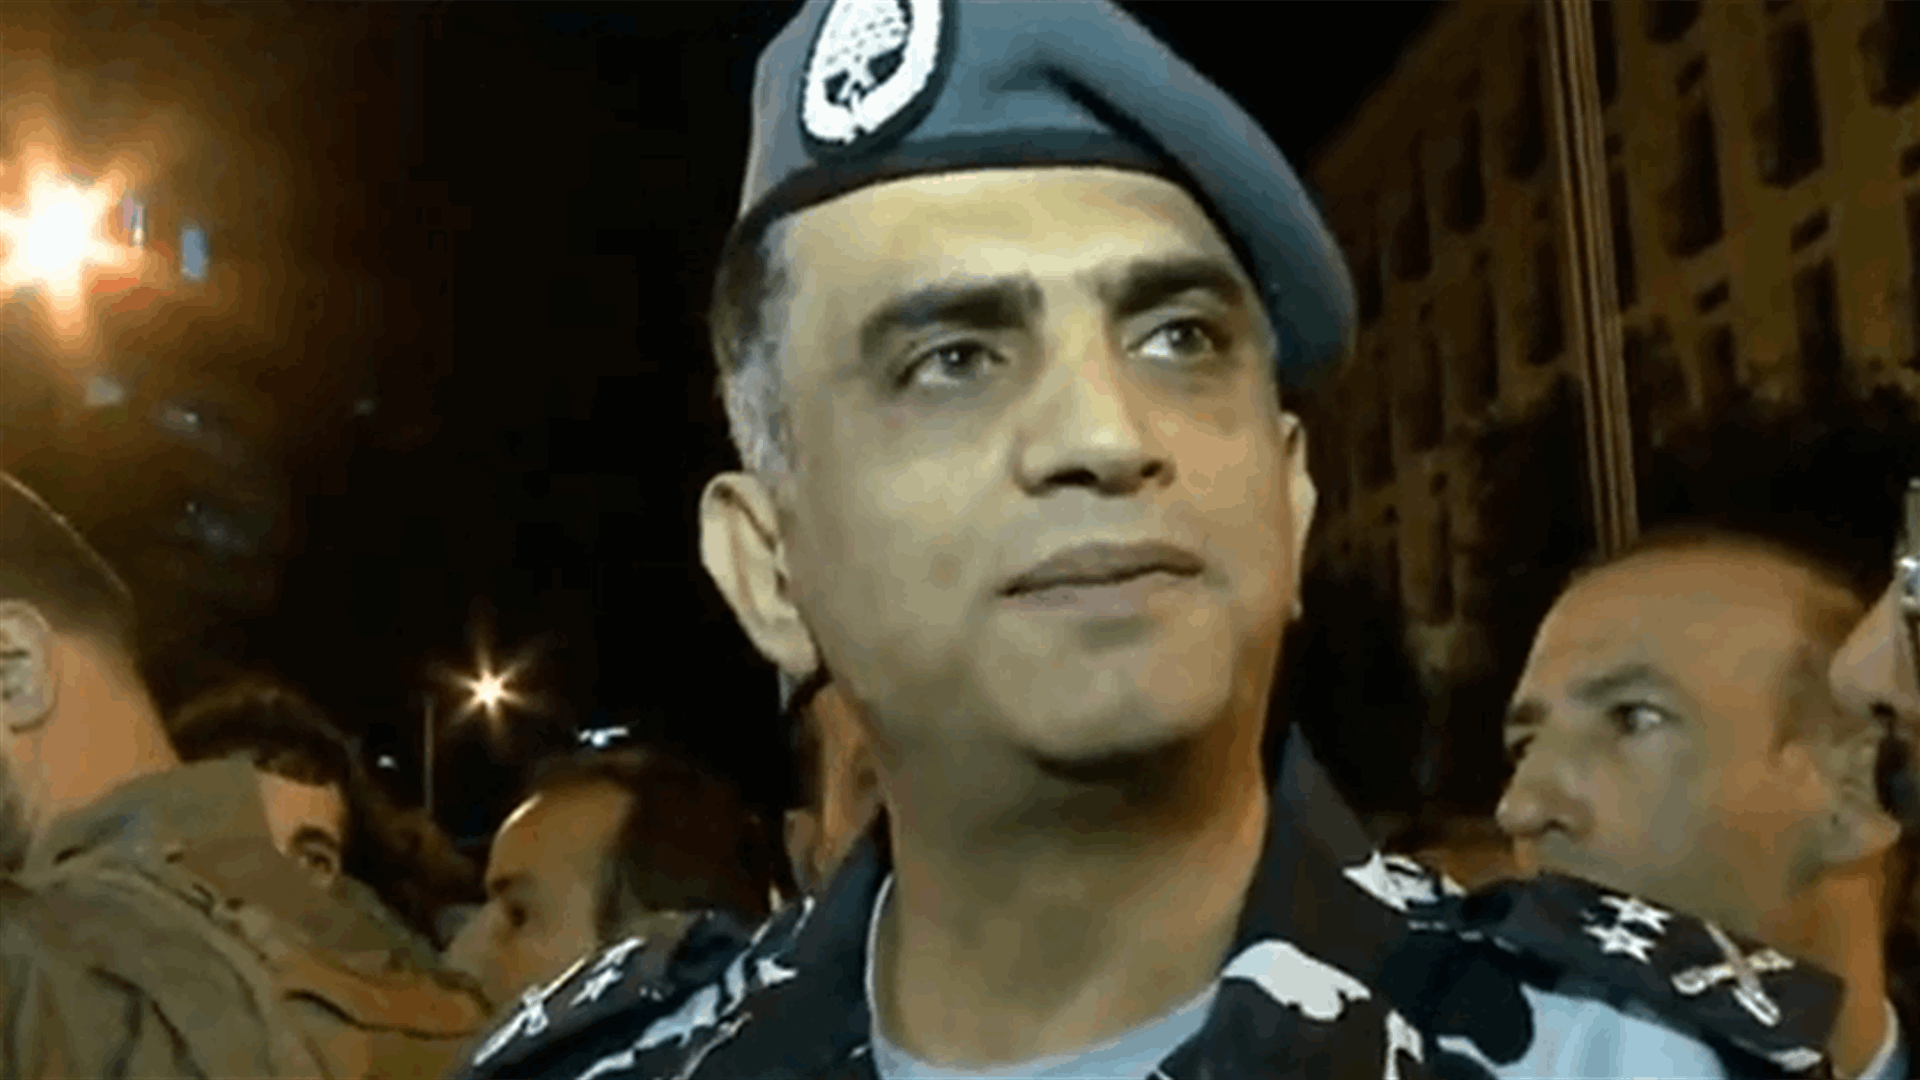 اللواء عثمان من وسط بيروت: من غير المسموح التعدي على القوى الامنية وللحفاظ على الحراك السلمي (فيديو)